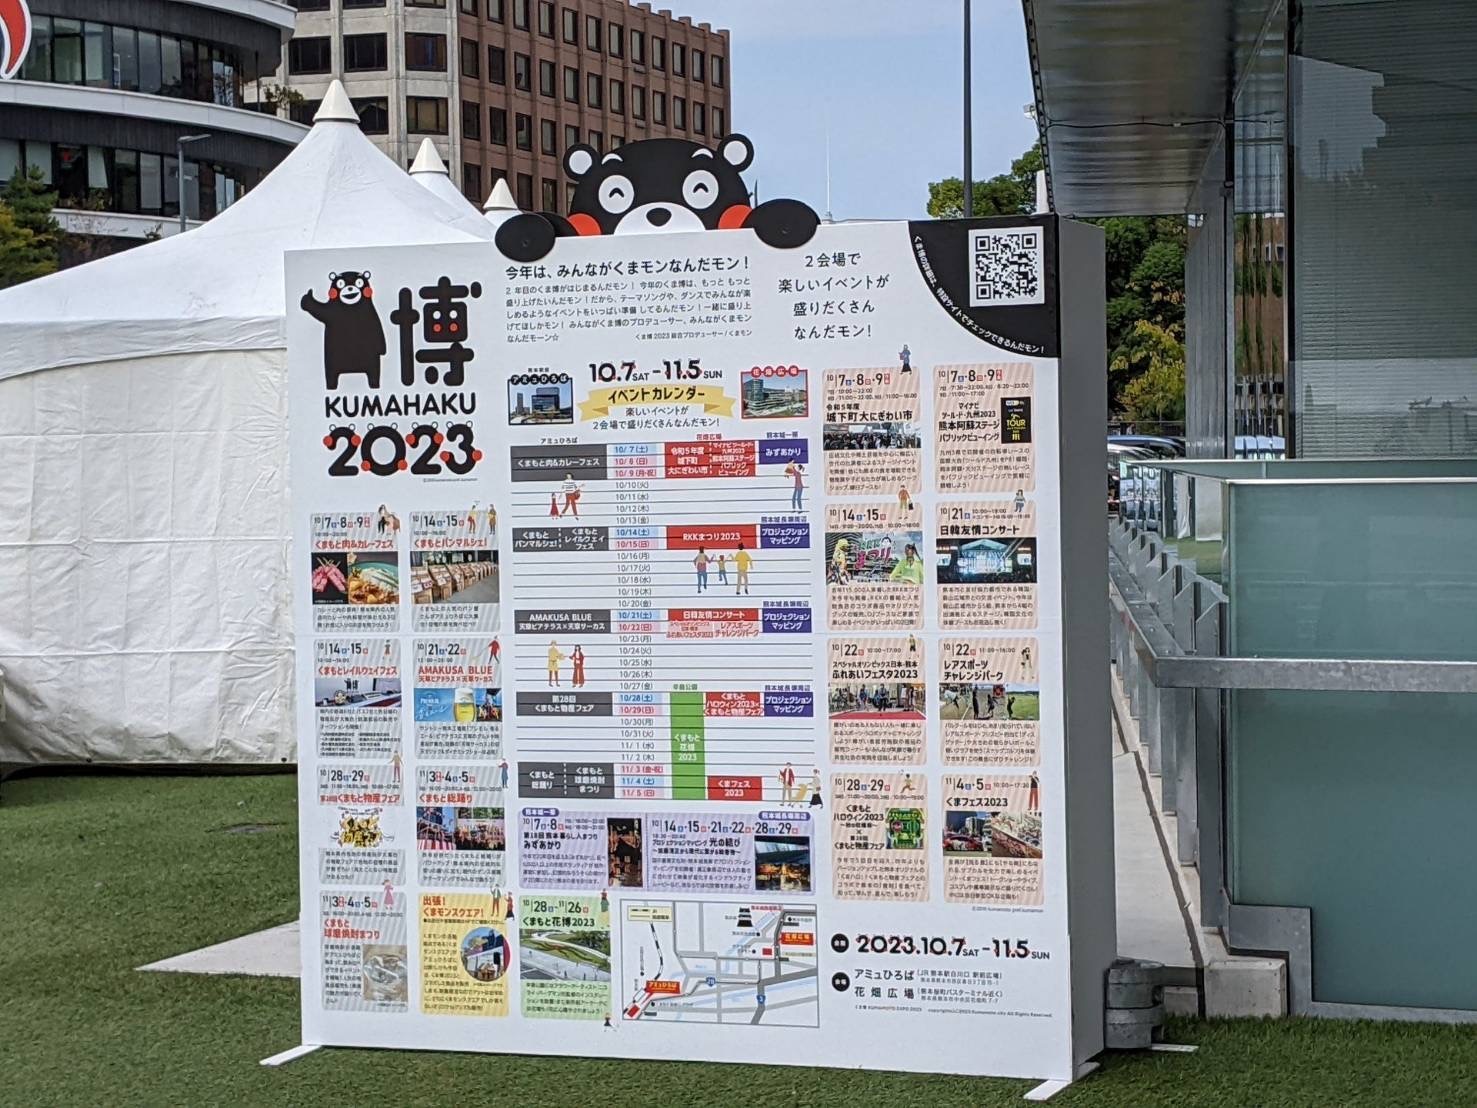 「くま博 2023」イベントカレンダー